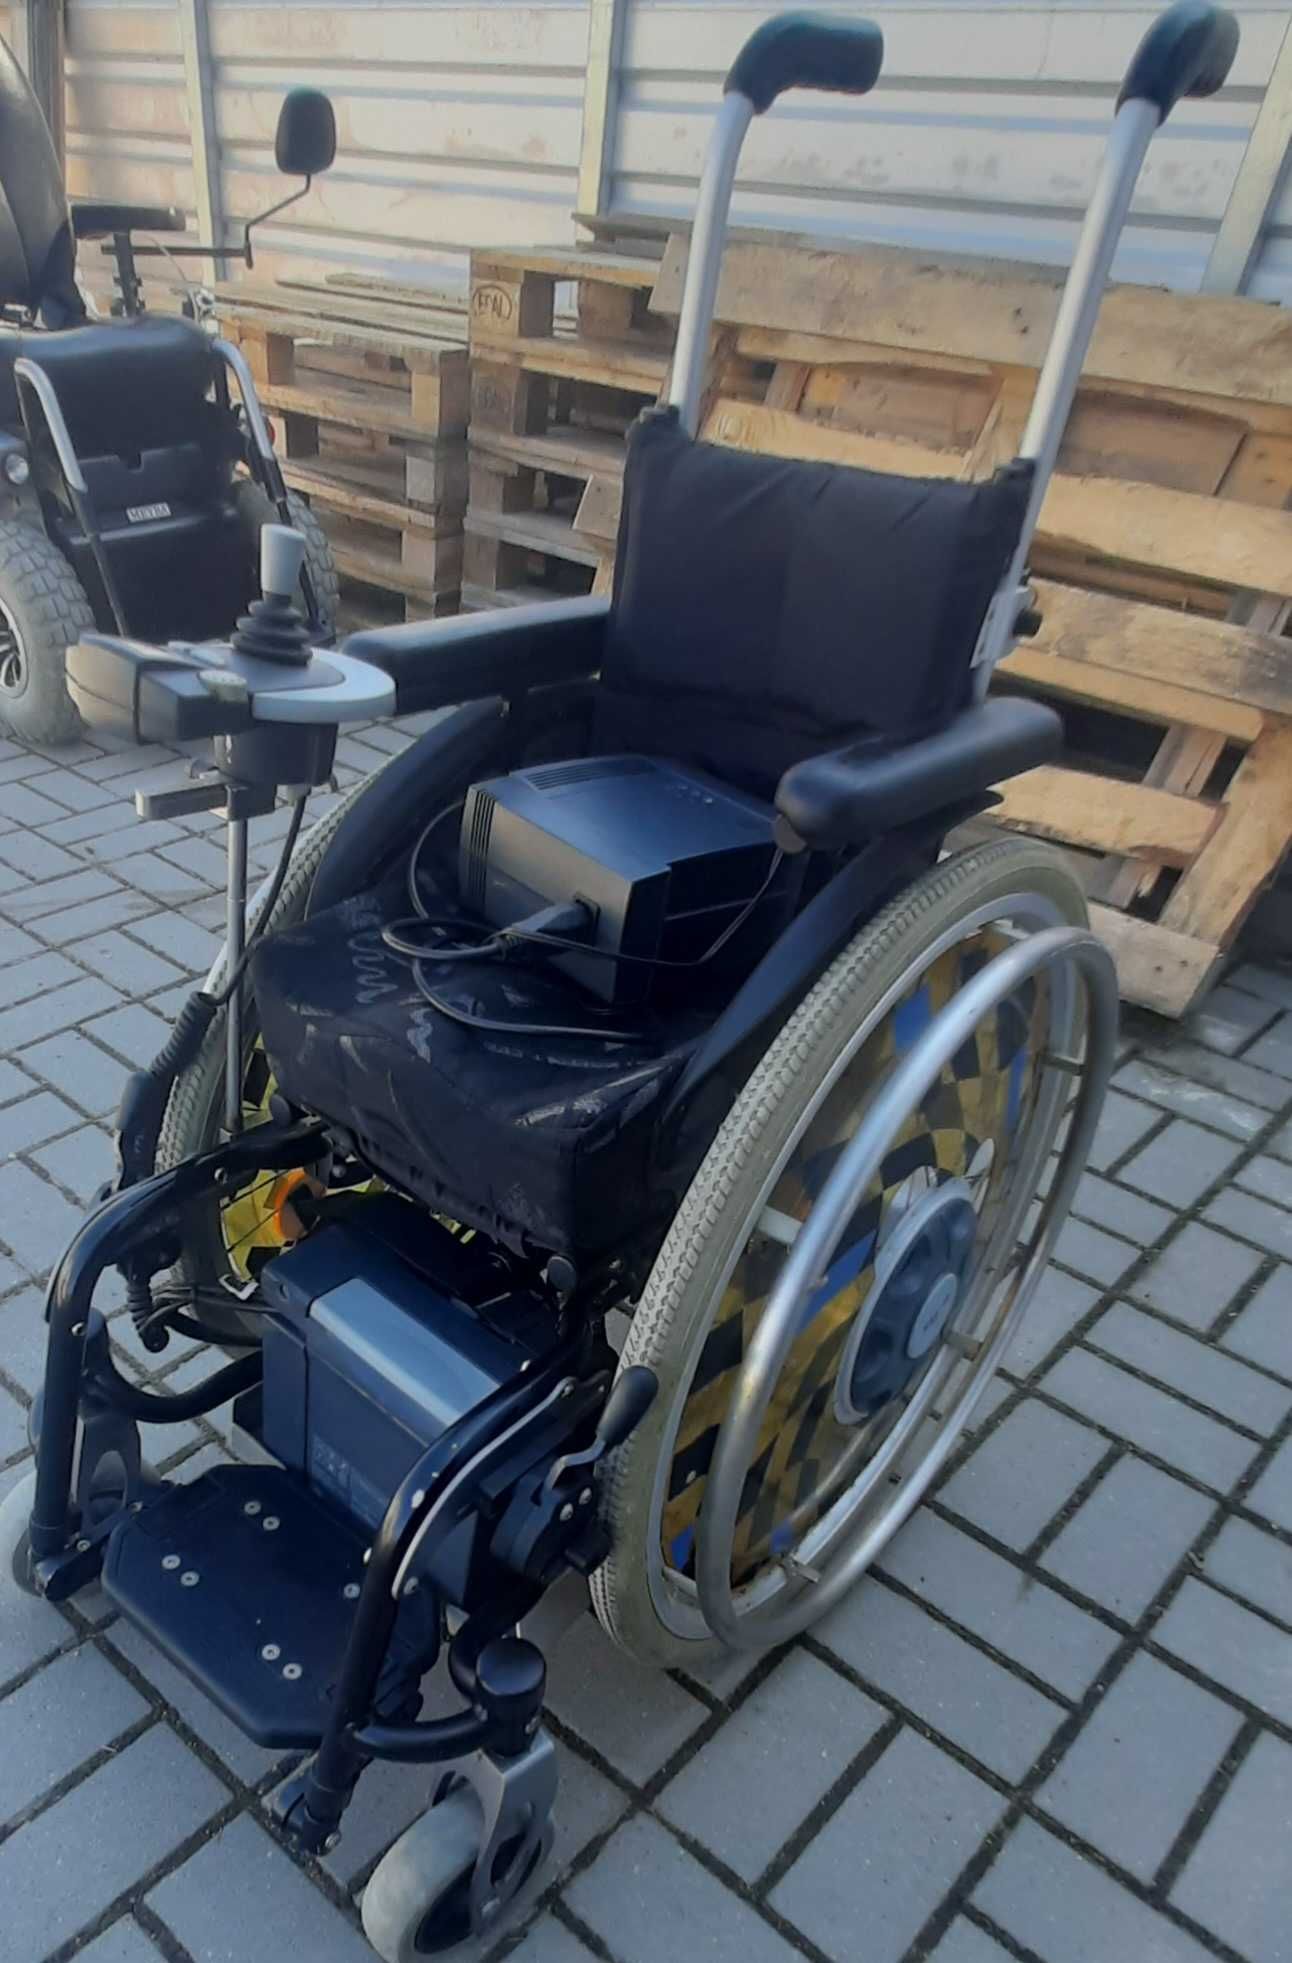 Wózek inwalidzki dla dzieci z napędem elektrycznym różne rozmiary